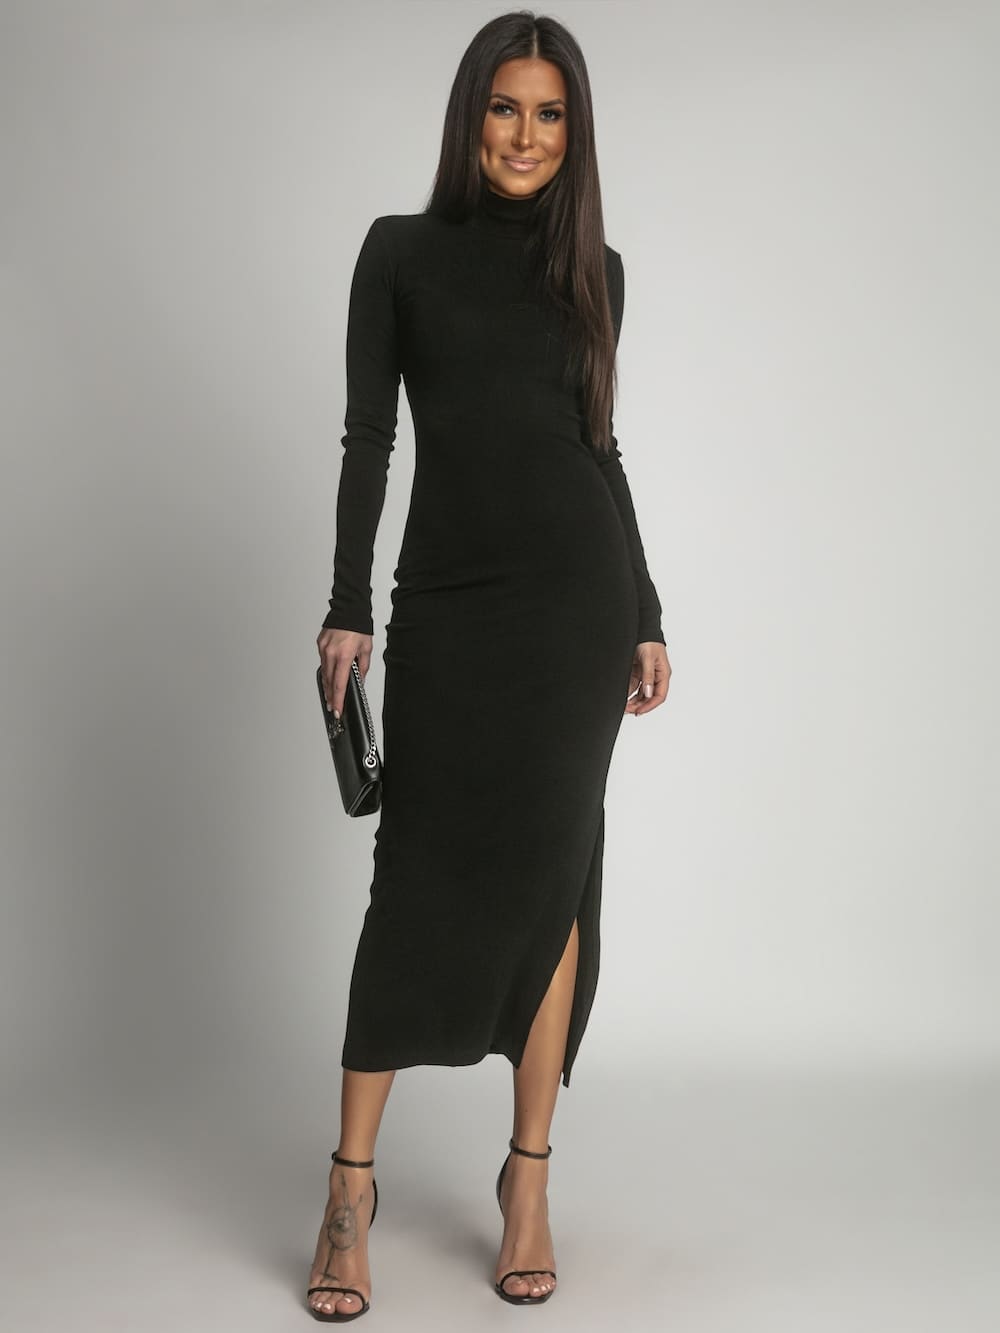 Black turtleneck maxi dress with side slit